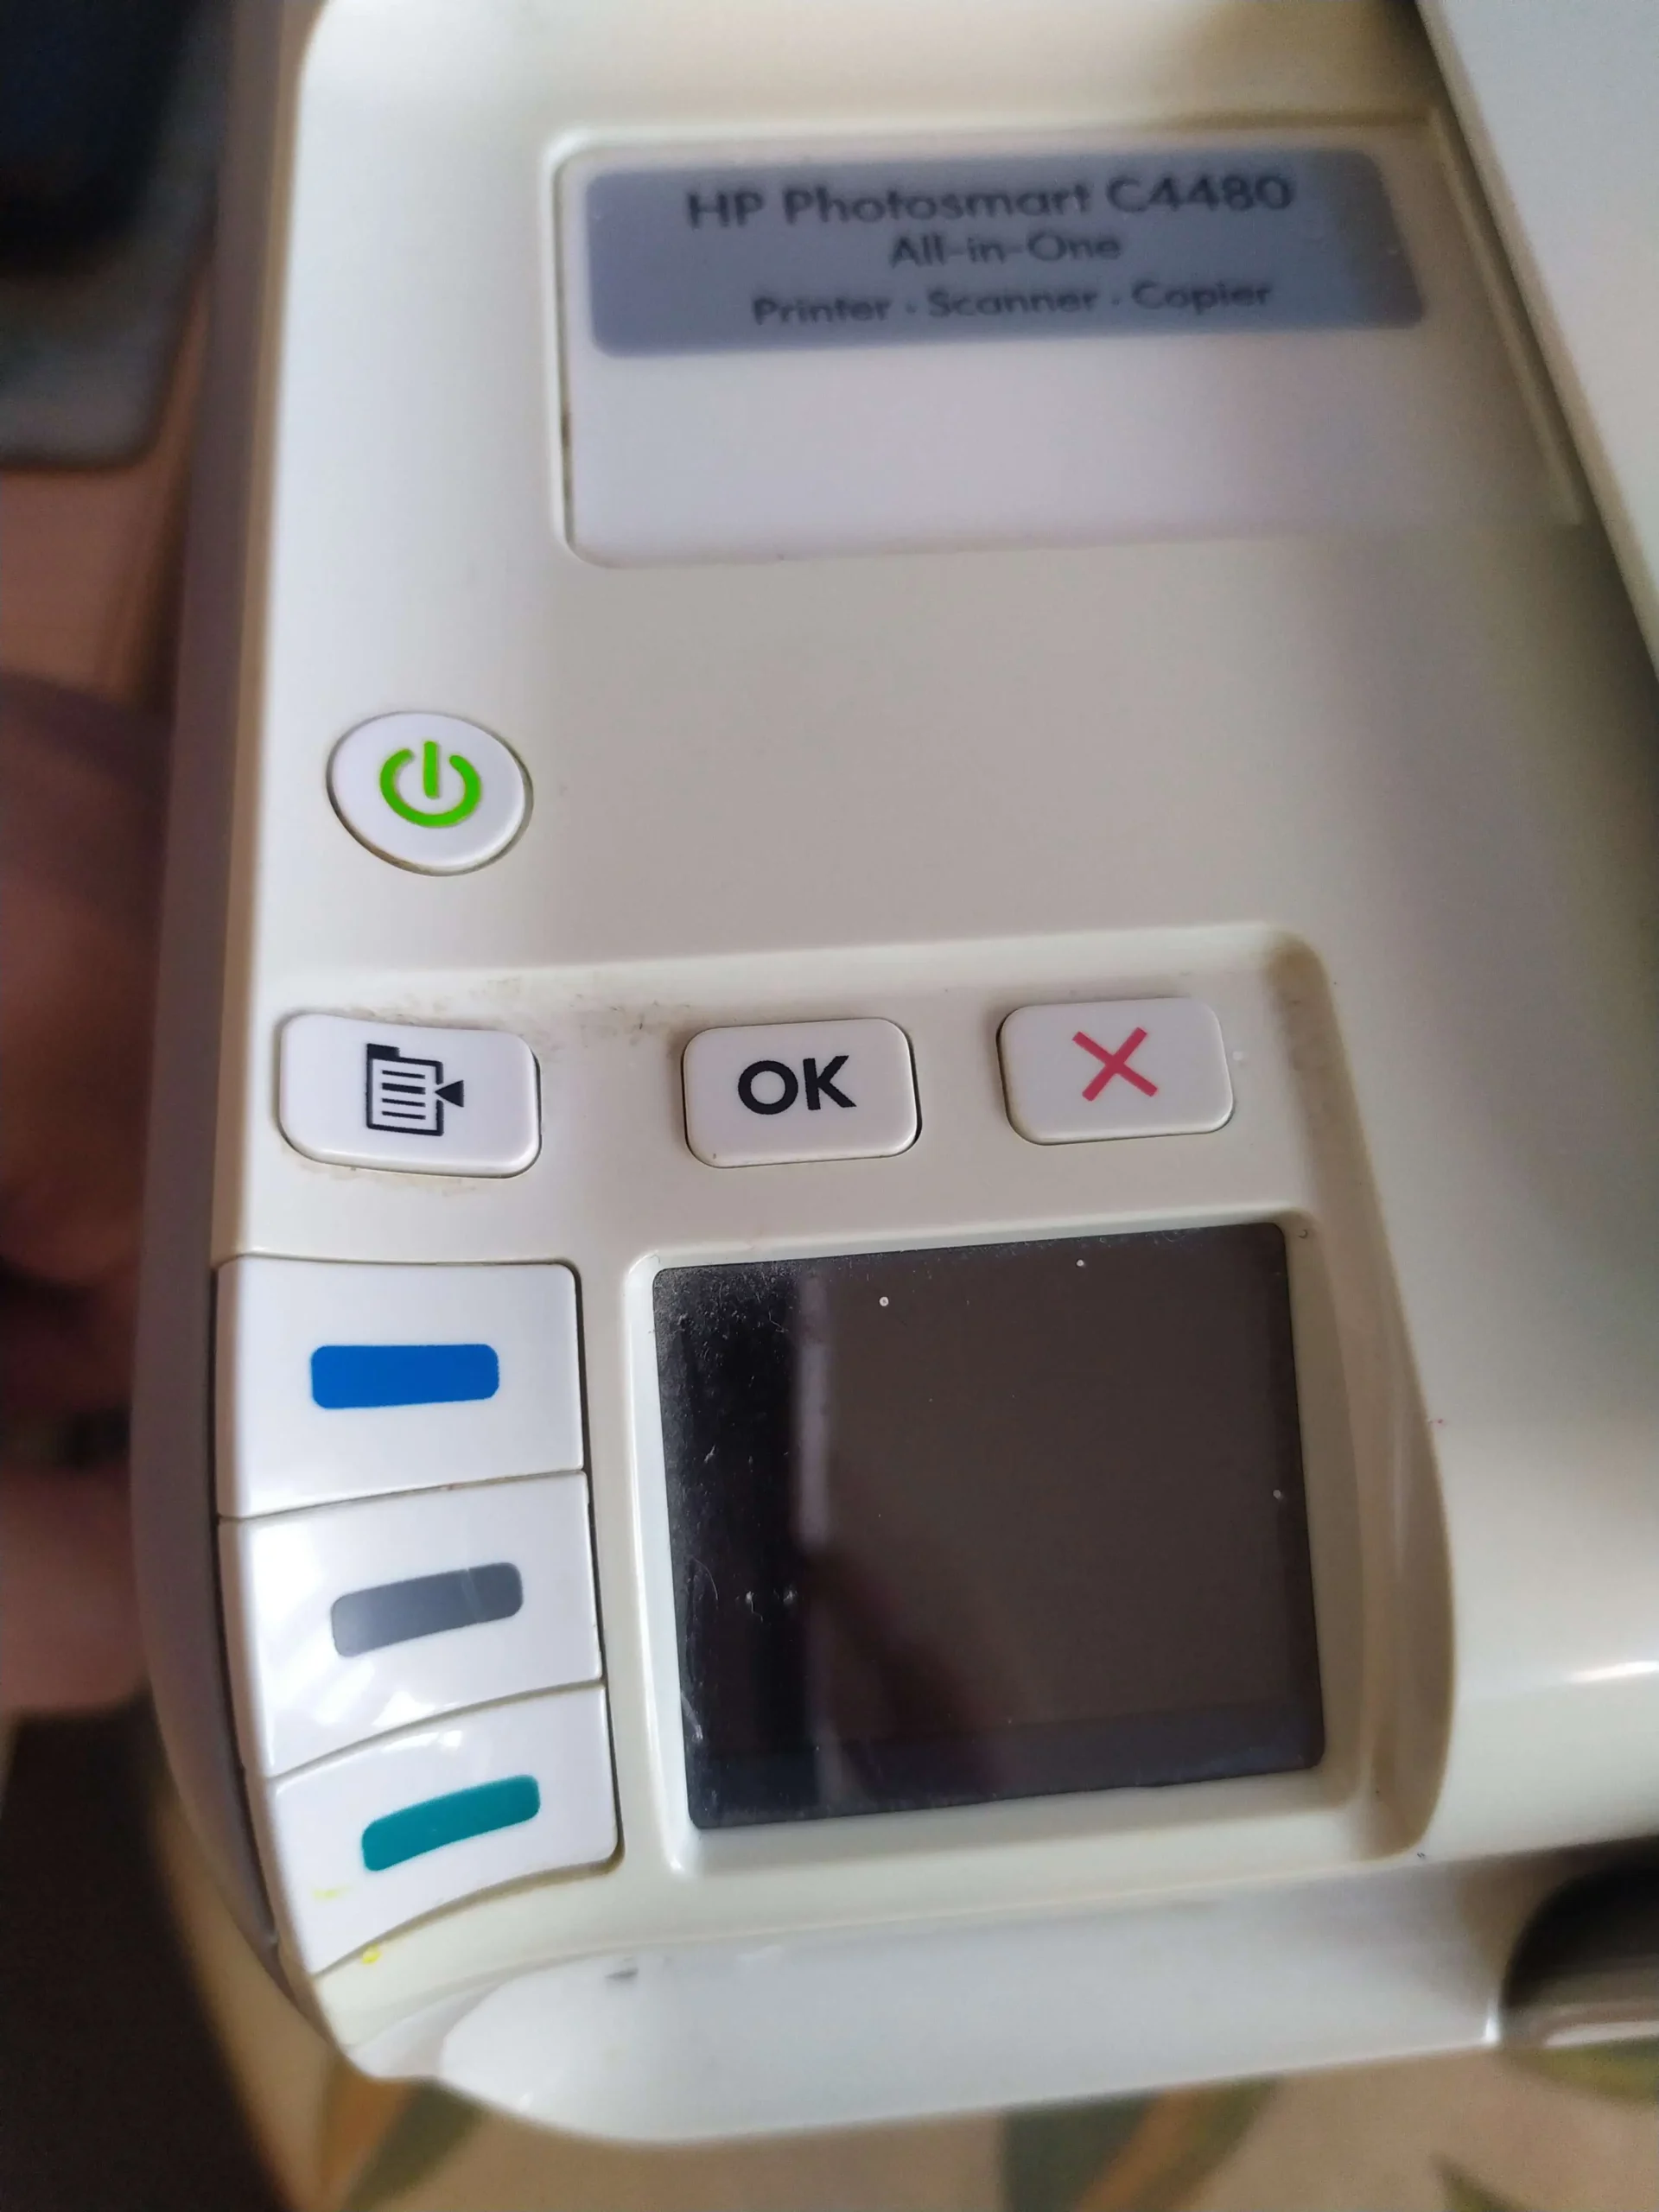 impresora hp no enciende la pantalla - Cómo hacer que funcione la impresora